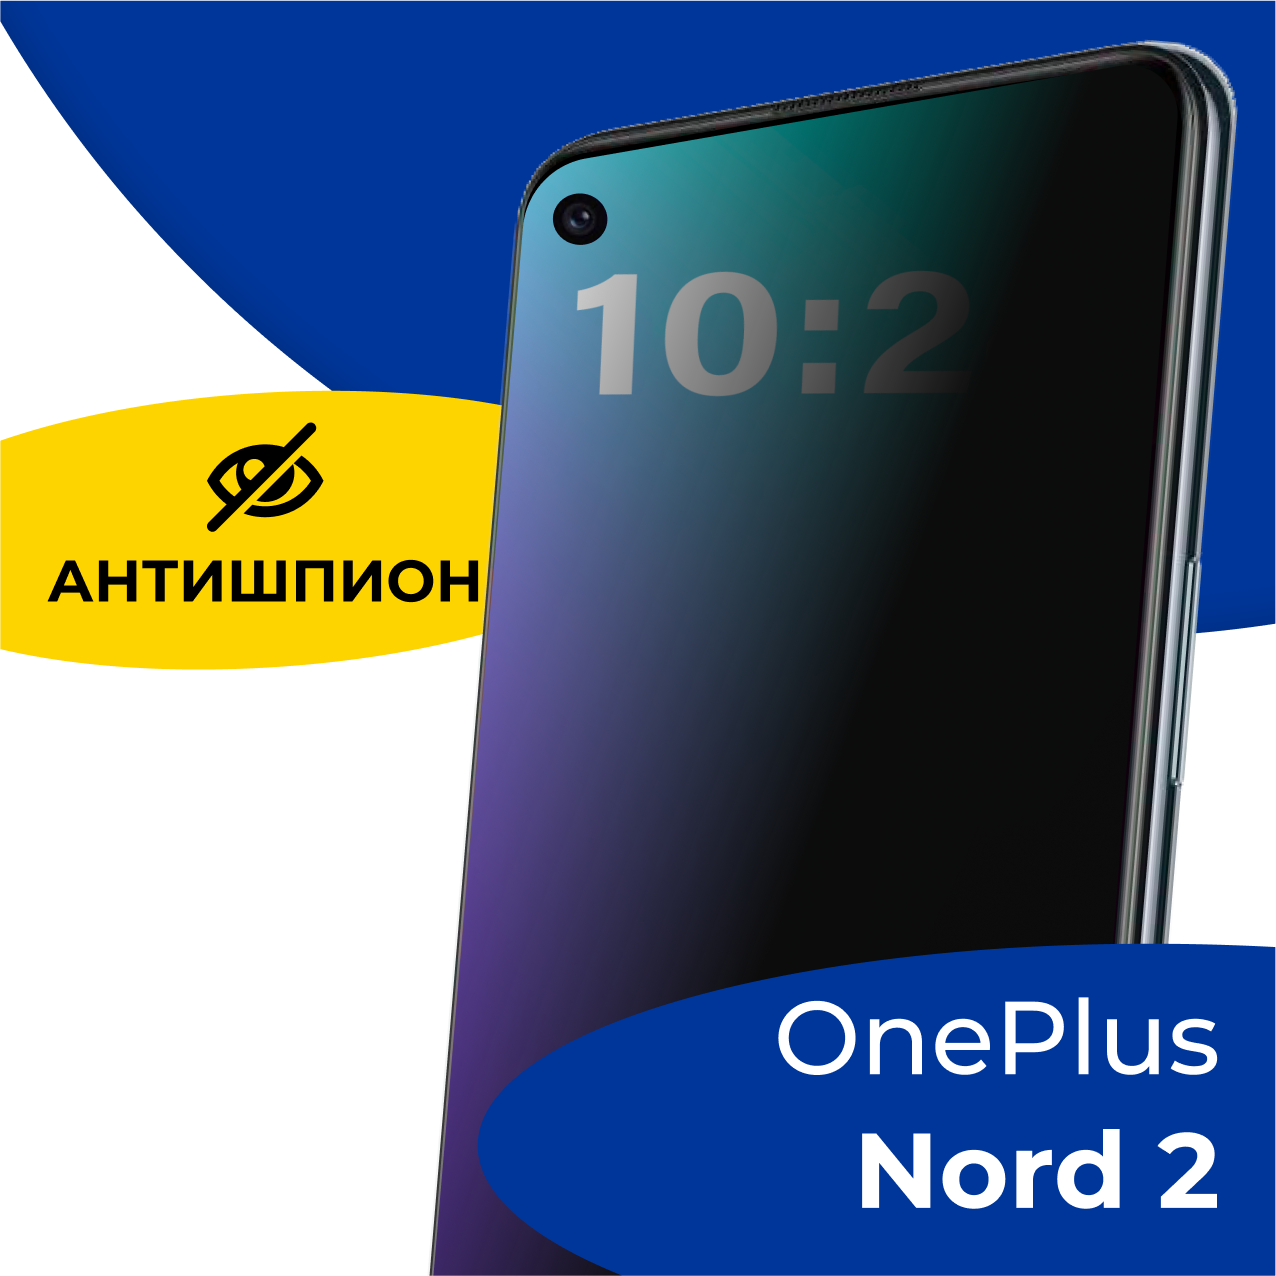 Защитное полноэкранное стекло Антишпион на телефон OnePlus Nord 2 / Противоударное стекло 5D для смартфона ВанПлас Норд 2 с олеофобным покрытием